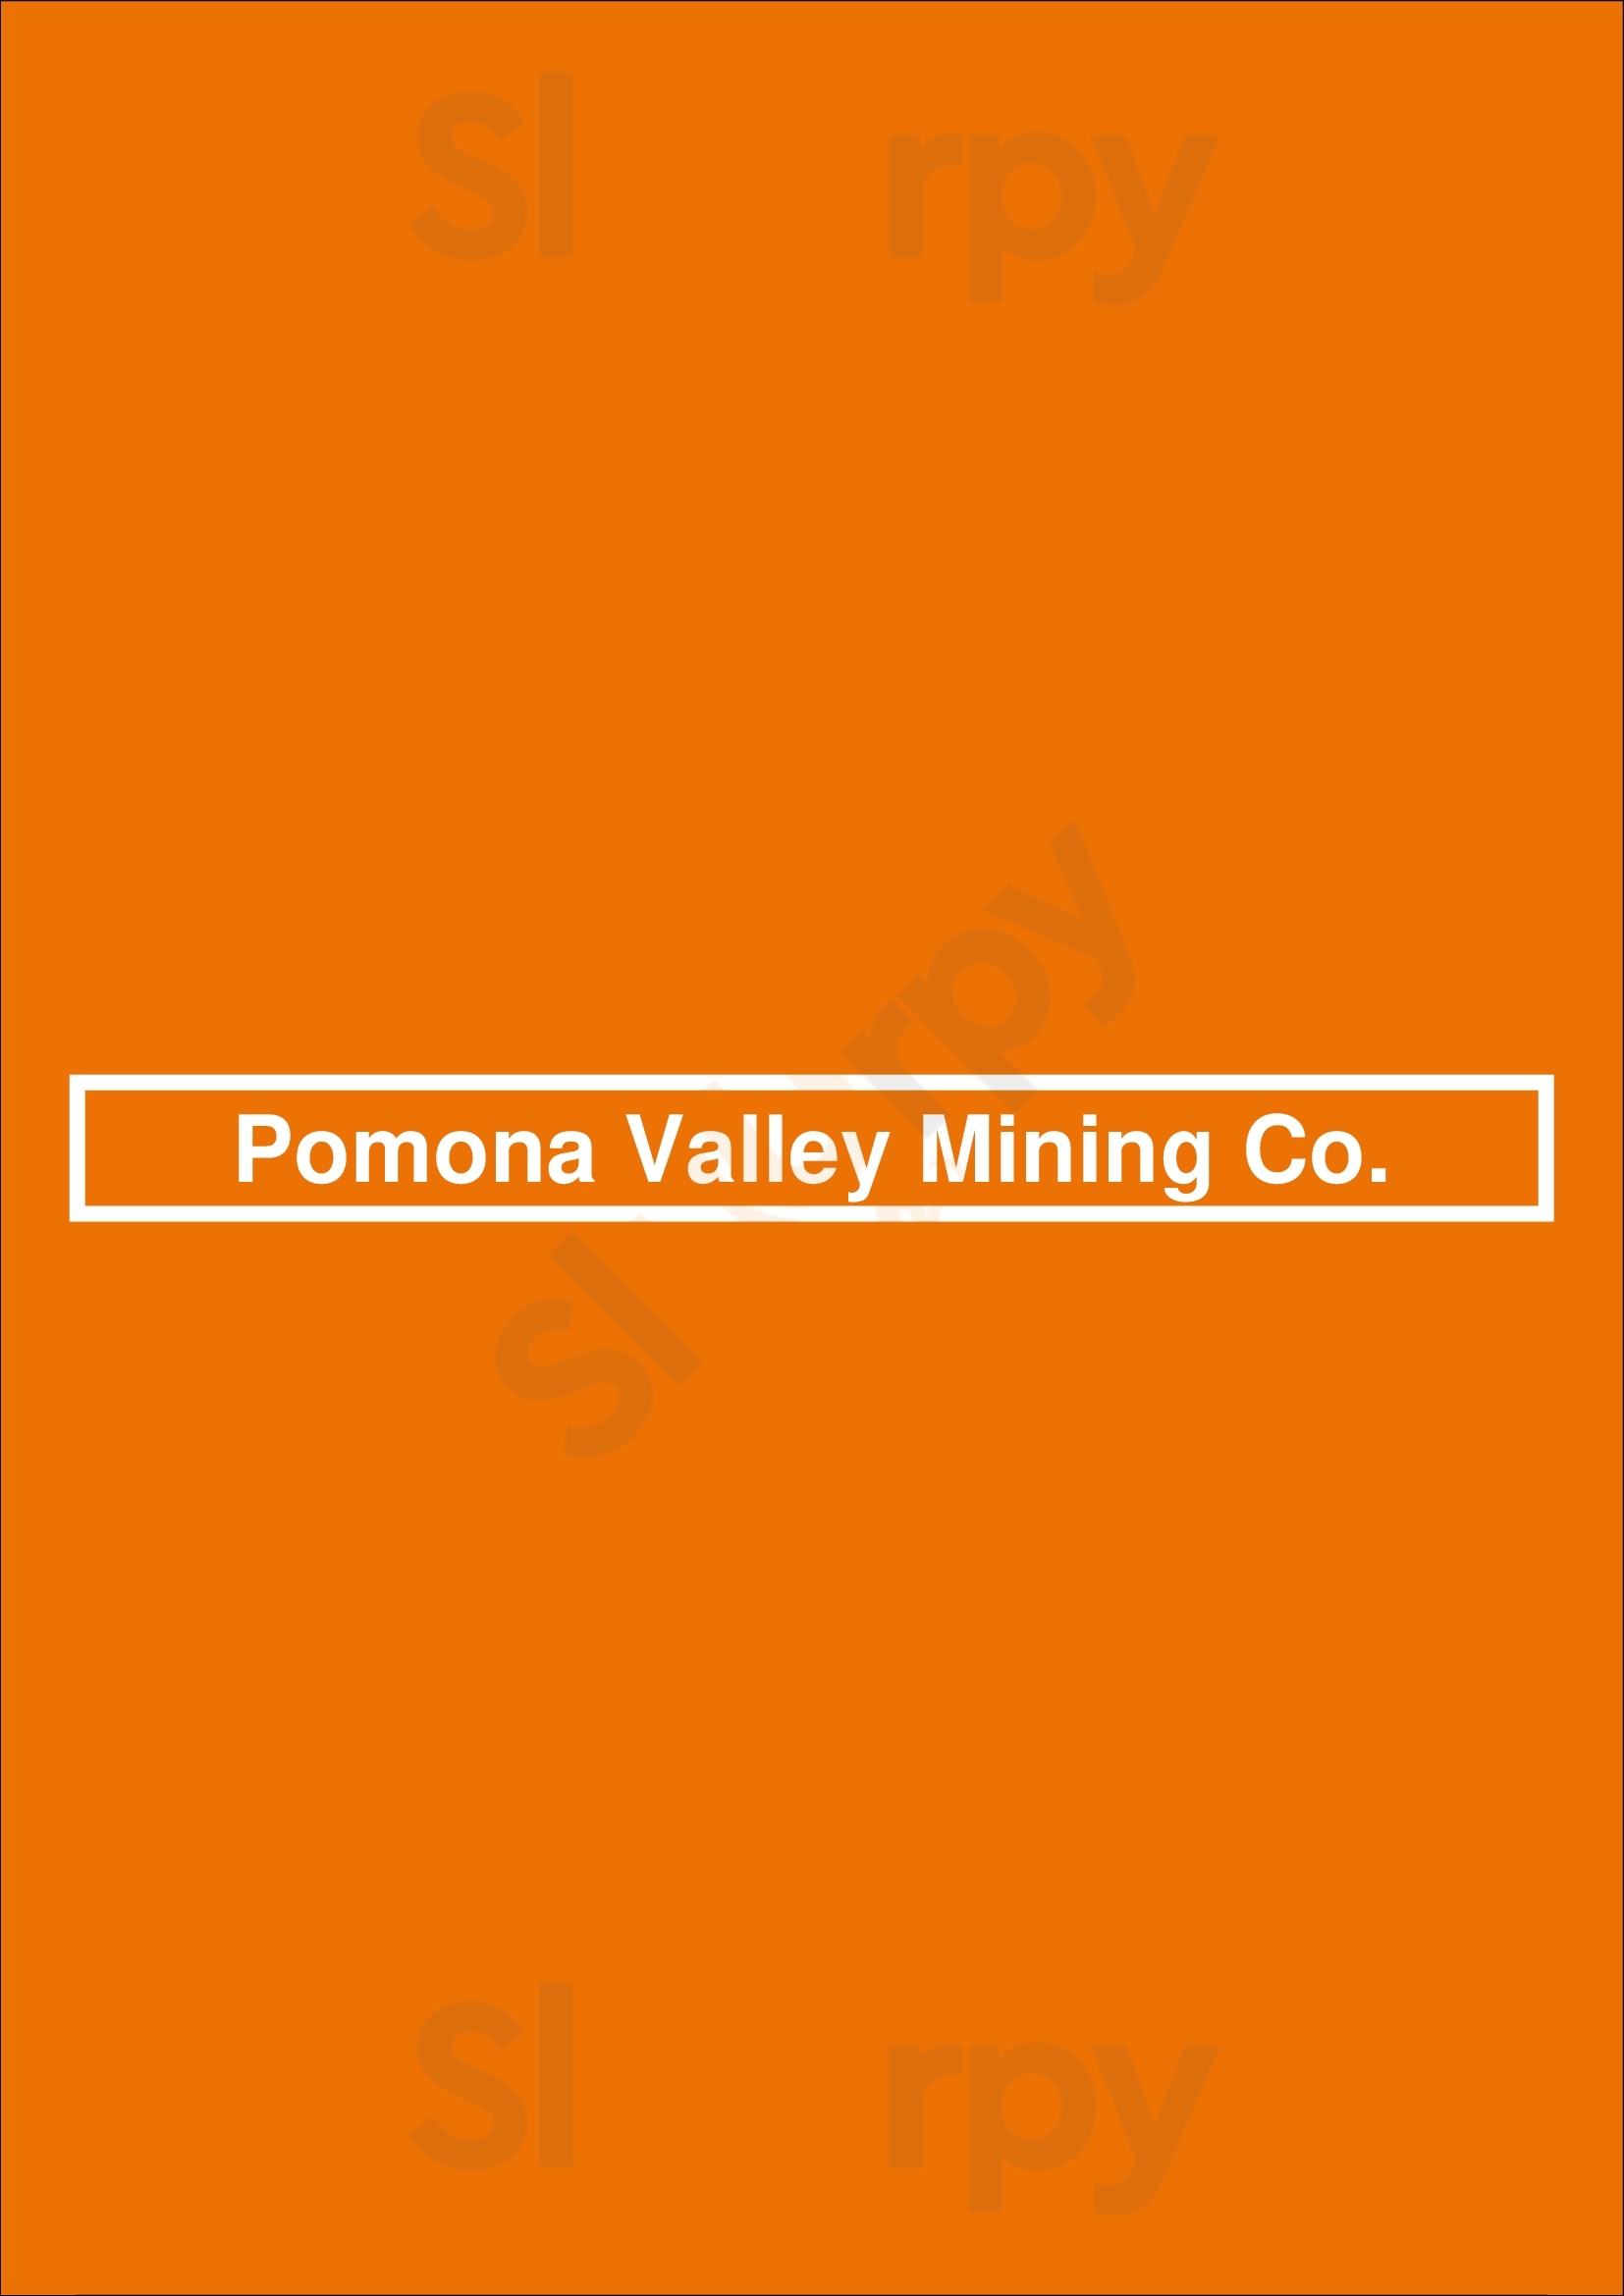 Pomona Valley Mining Co. Pomona Menu - 1